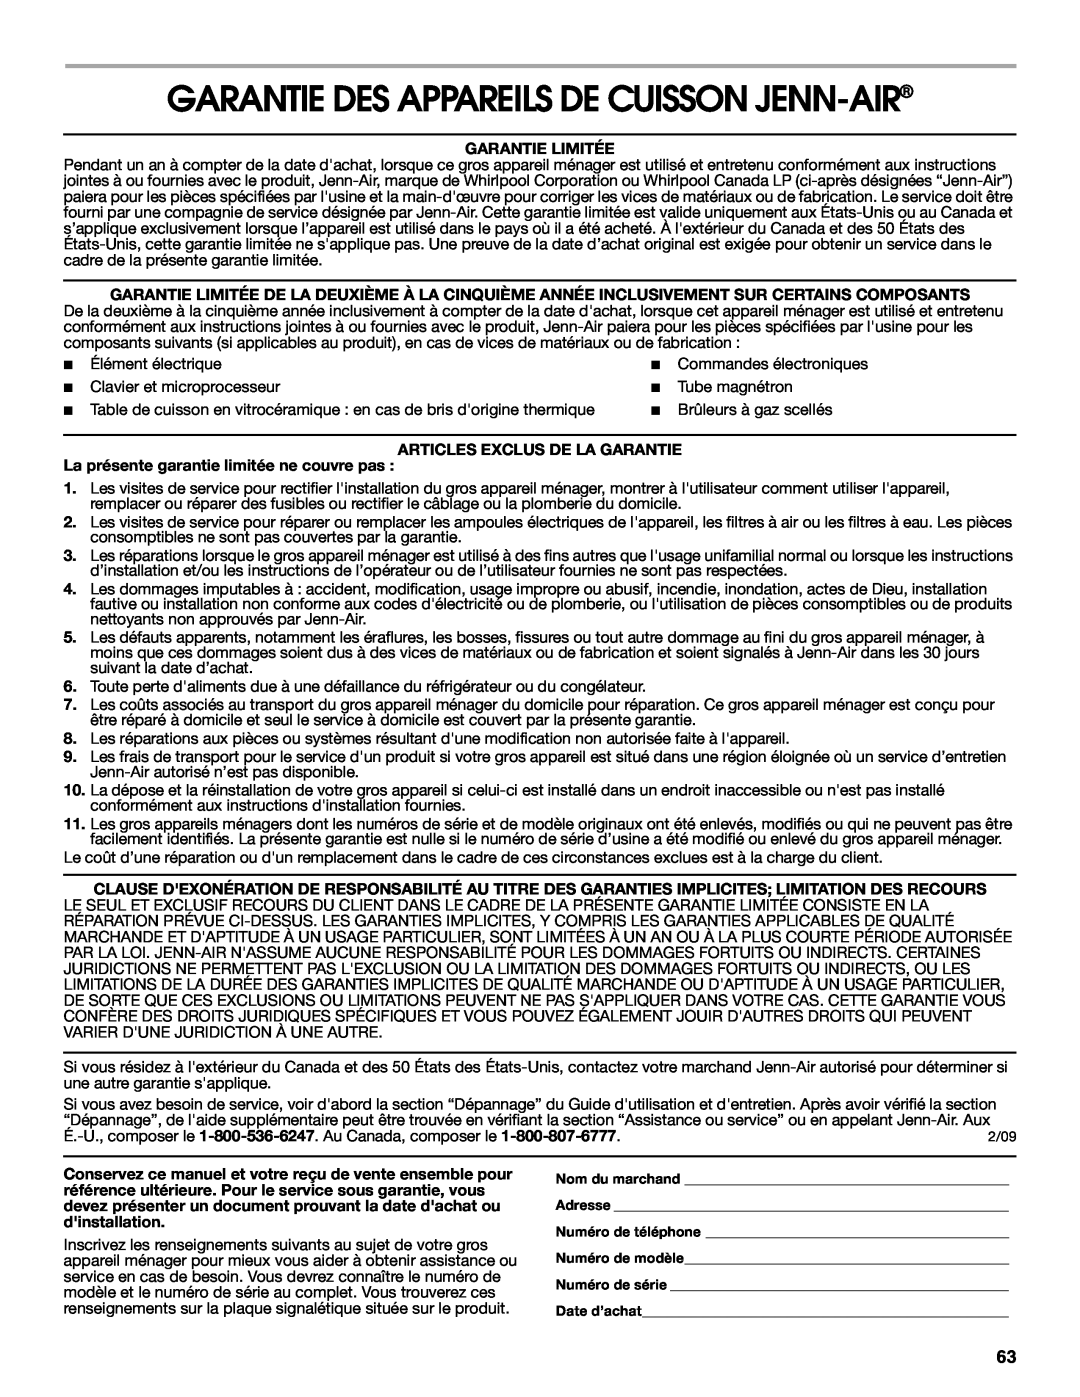 Jenn-Air JDS9865 manual Garantie Des Appareils De Cuisson Jenn-Air, Garantie Limitée, Articles Exclus De La Garantie 